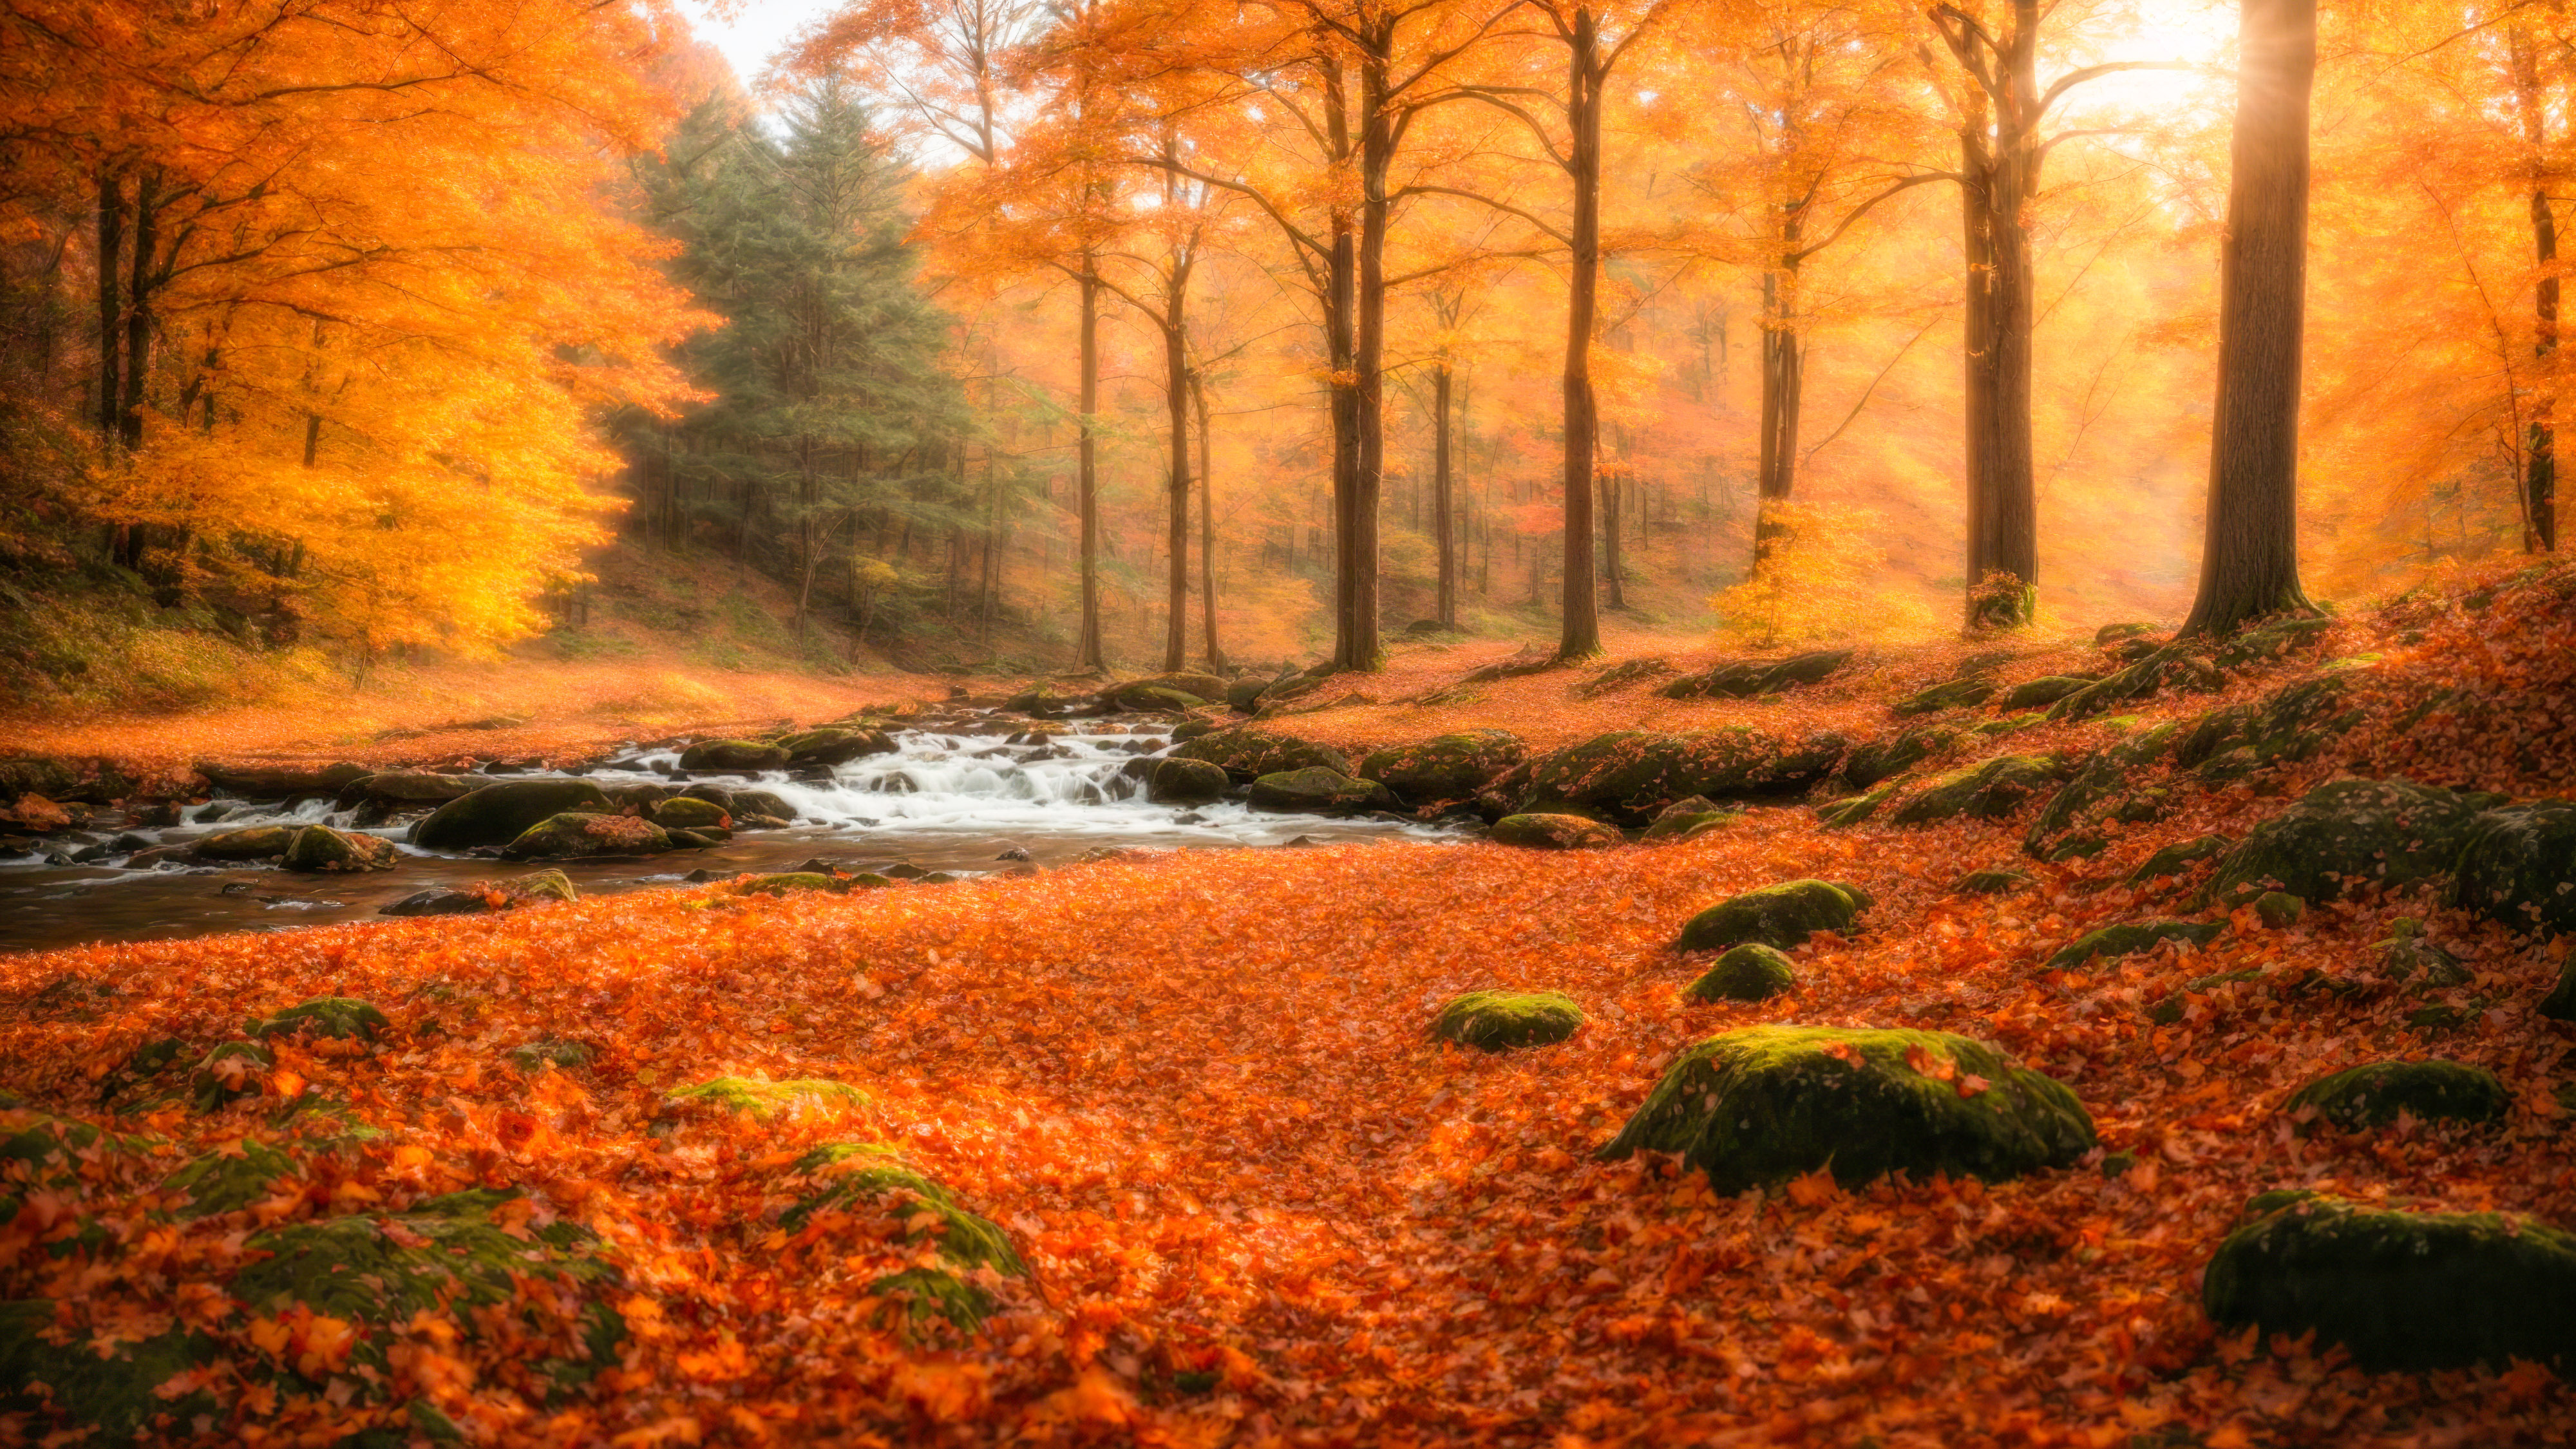 Laissez-vous hypnotiser par notre beau fond d'écran nature en HD, mettant en scène une scène de forêt tranquille avec un ruisseau sinueux, entouré d'un feuillage d'automne vibrant, et laissez votre écran devenir une fenêtre sur le cœur de la forêt.